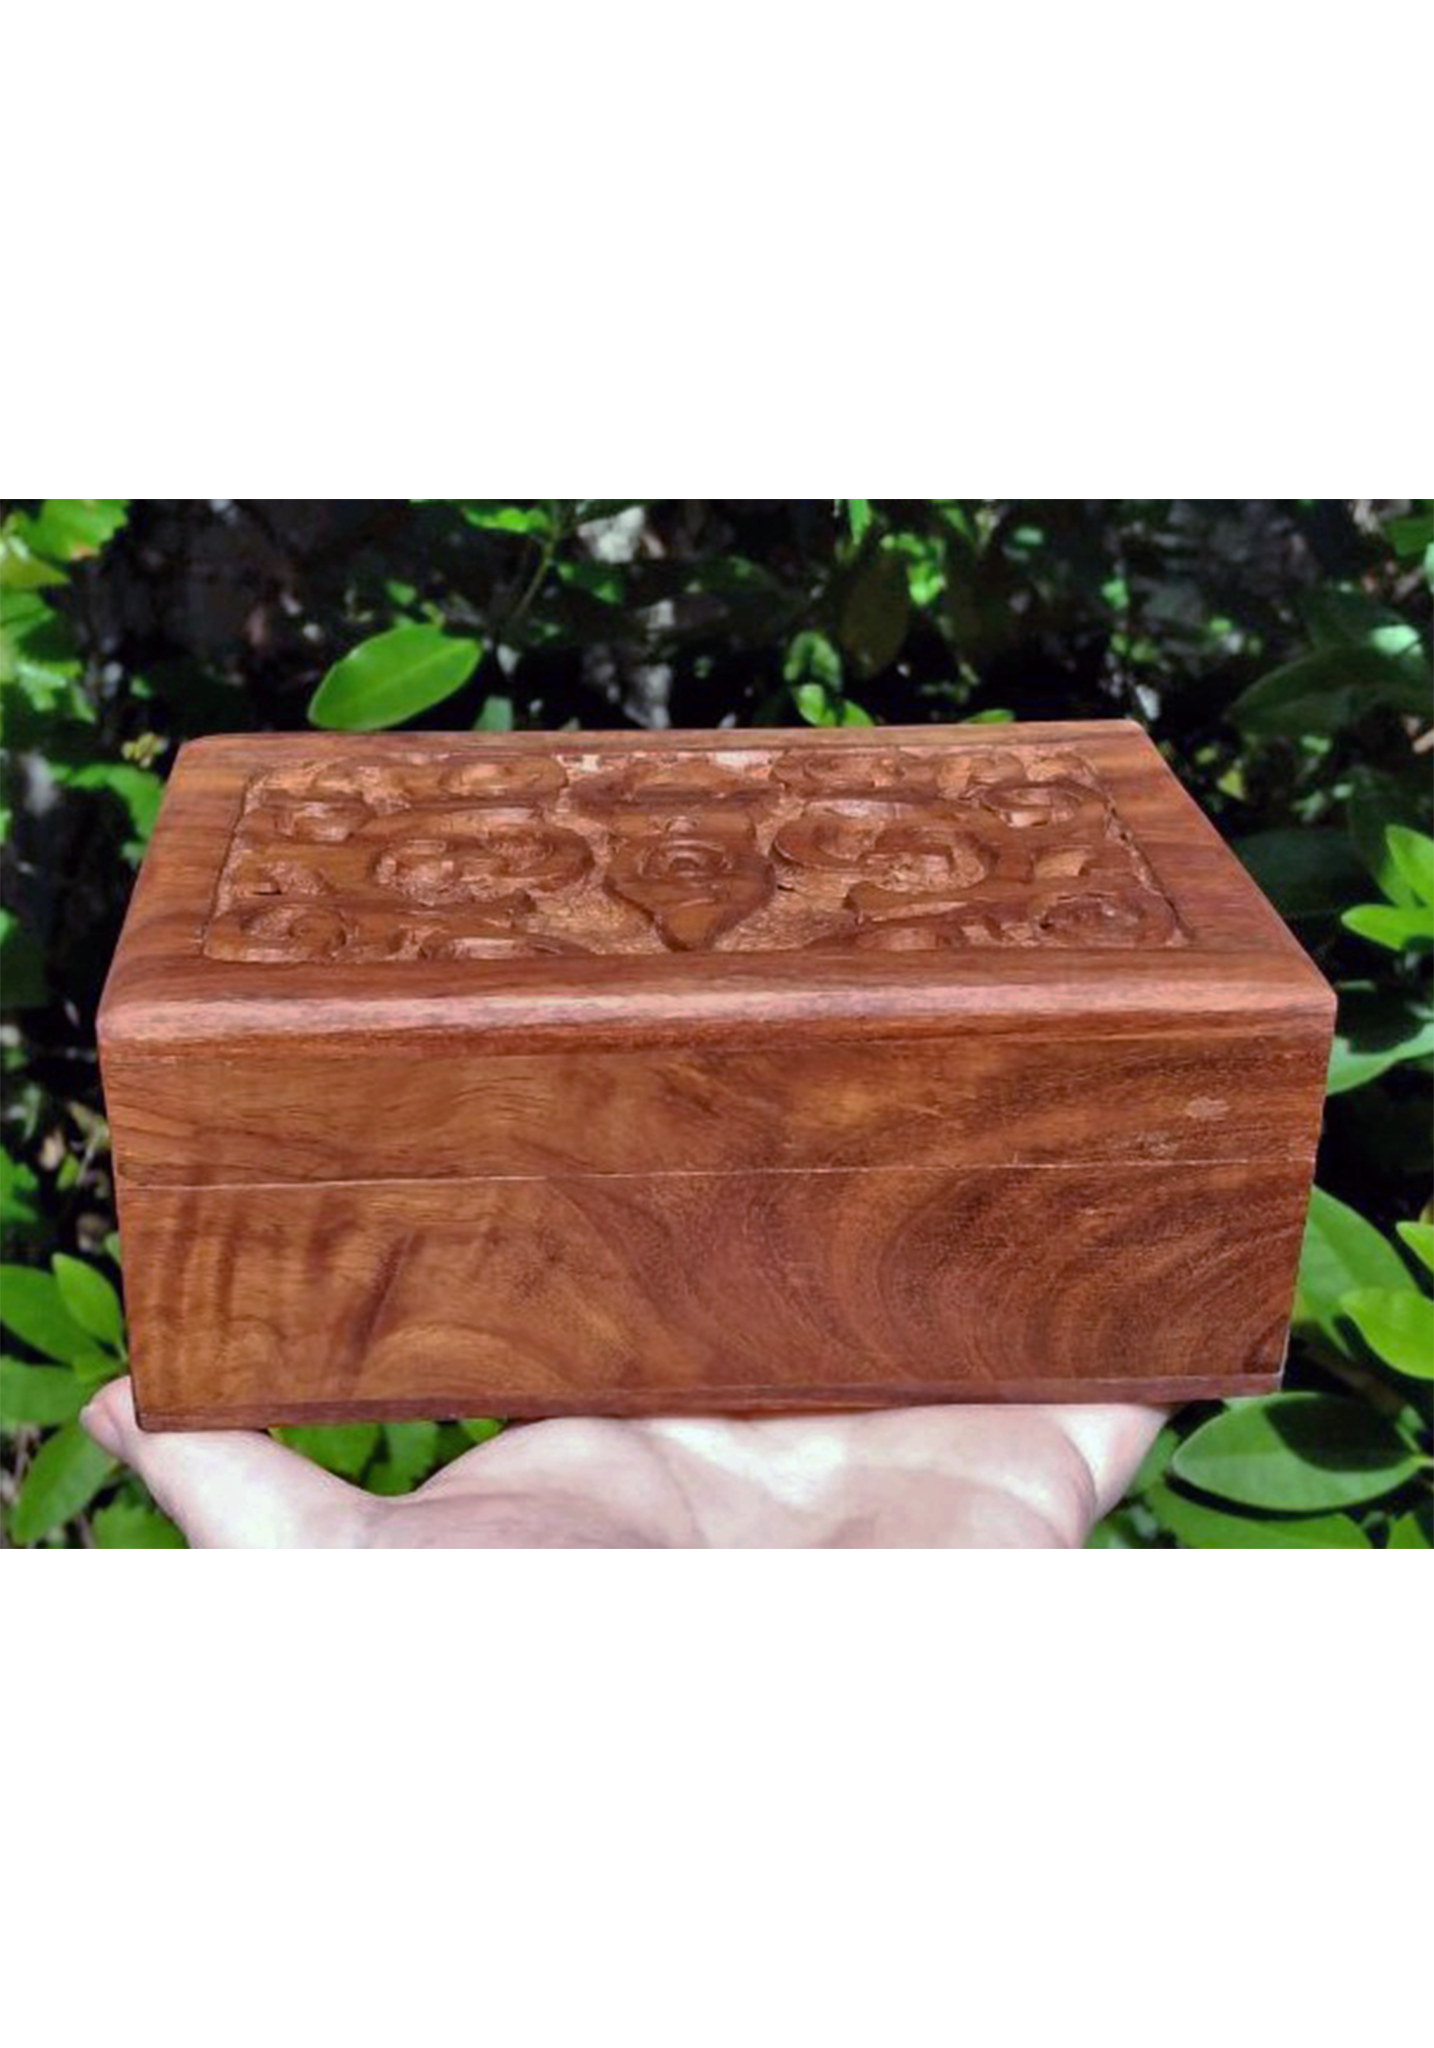 Divine Feminine Goddess Aspect Wooden Storage Chest Box